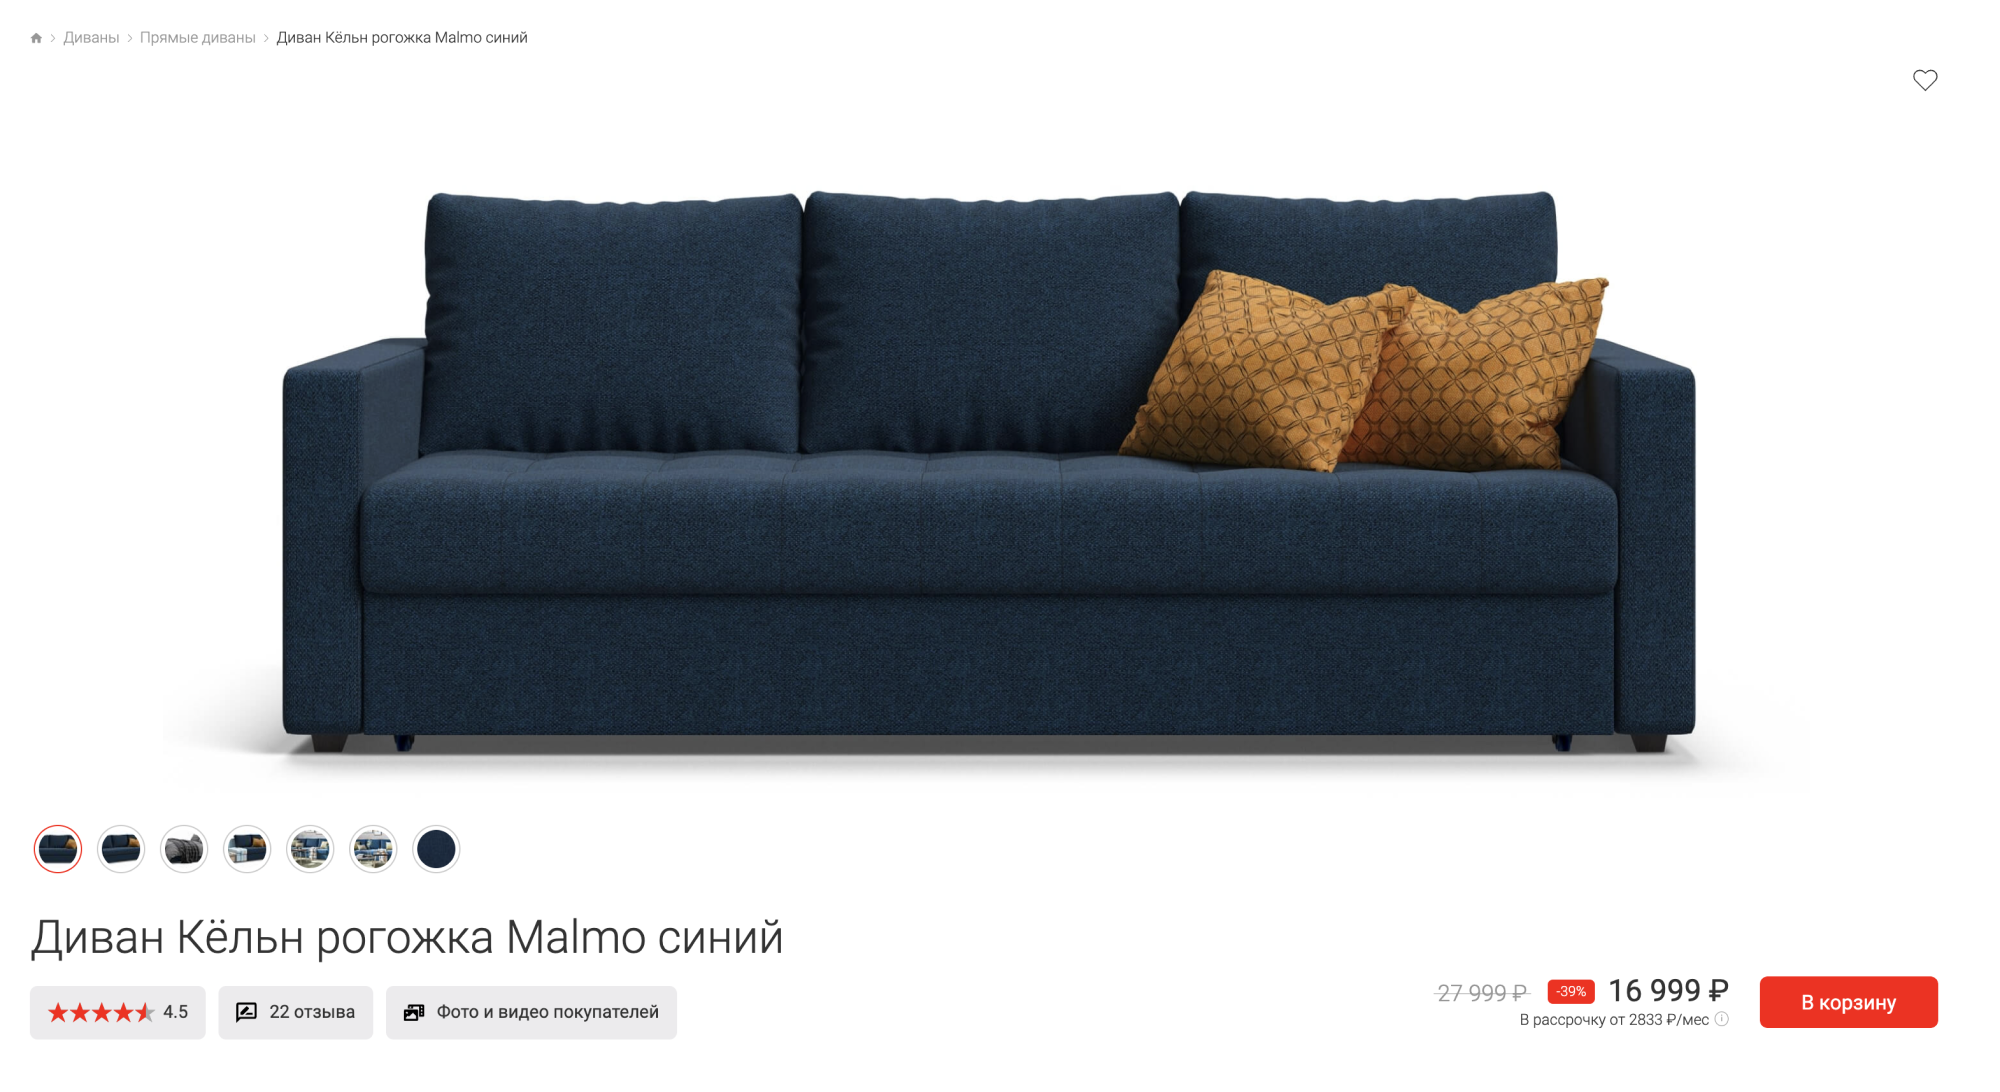 Этот диван визуально выглядит хорошо, его проще сочетать с отделкой и интерьером. Источник: mnogomebeli.com